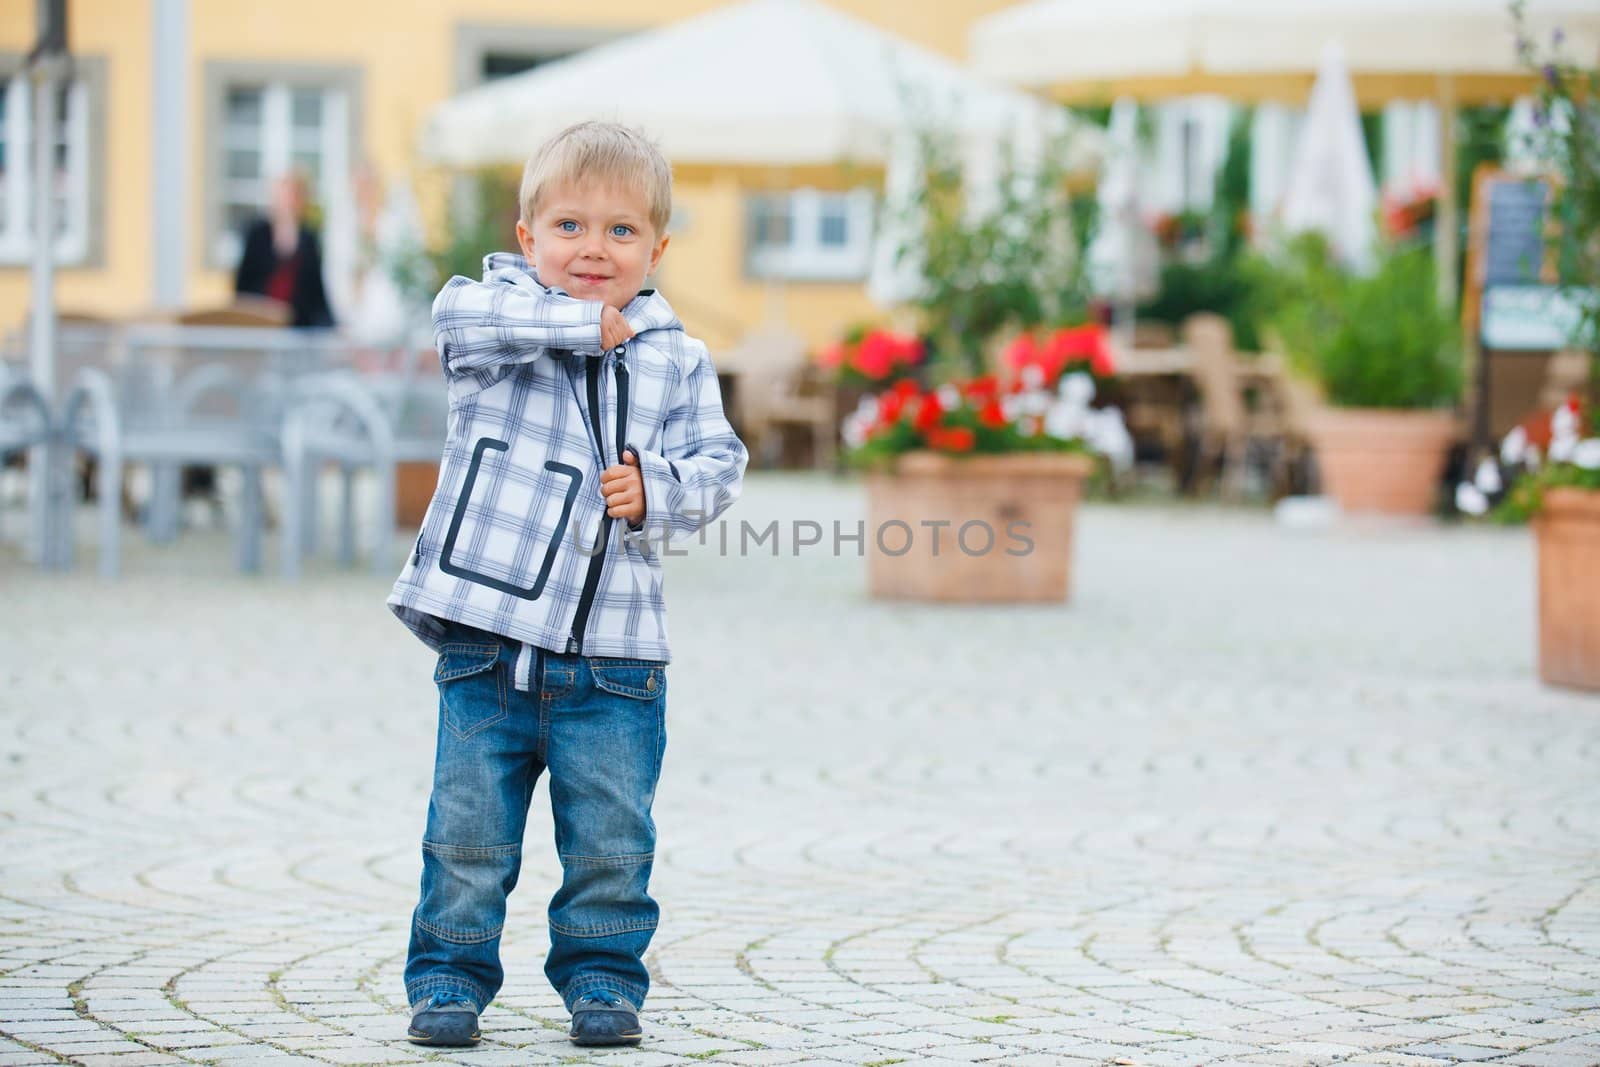 cute little boy outdoors in city street